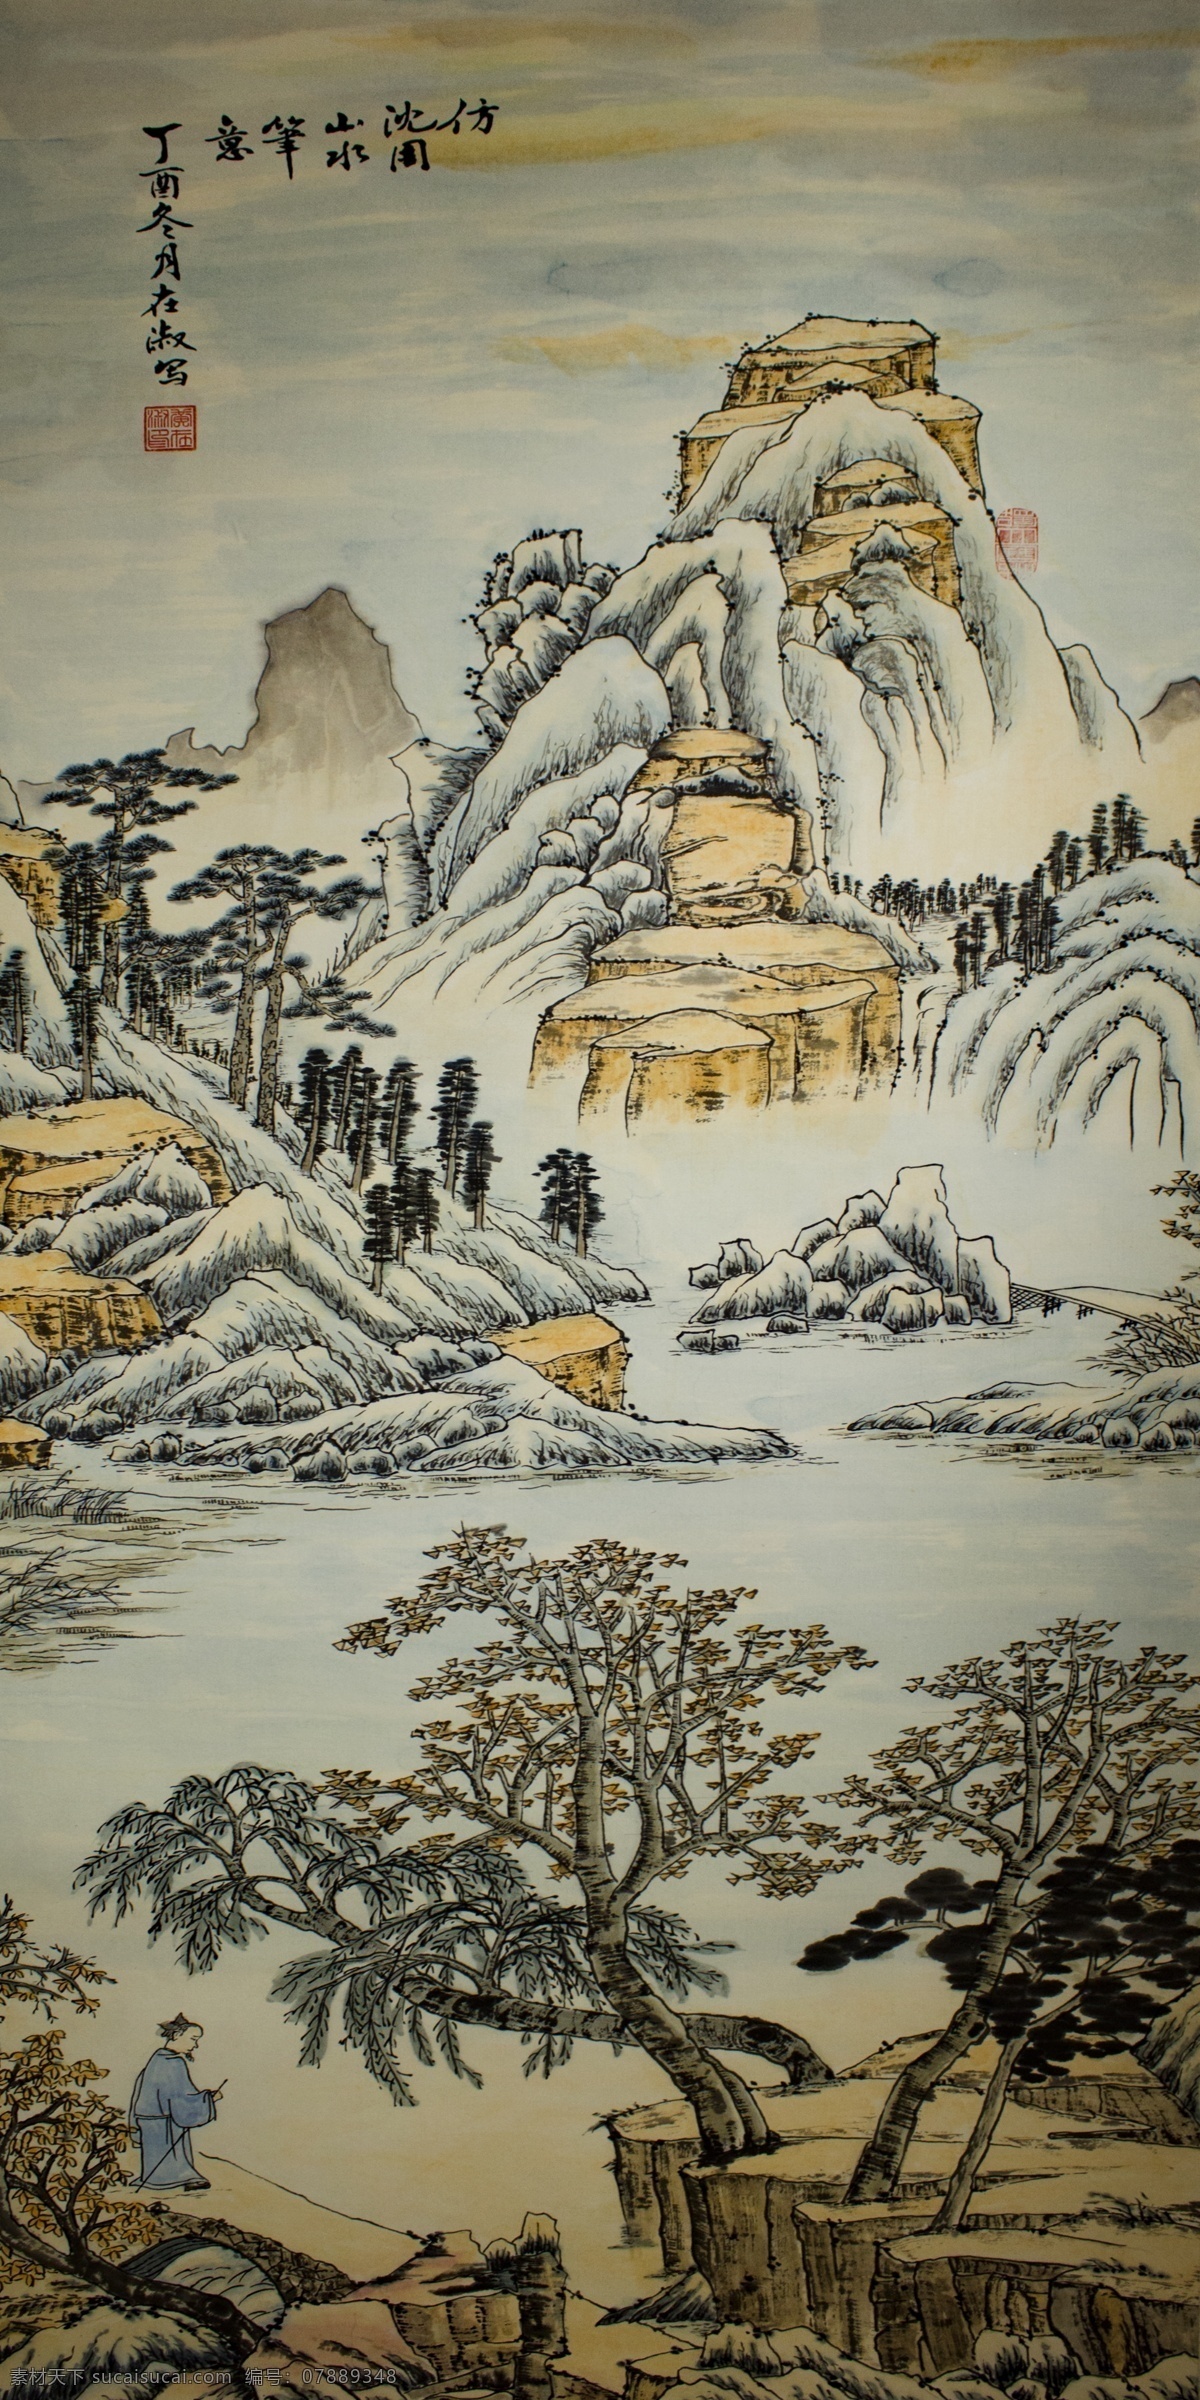 山水画 大山 植物 树木 河流 人物 装饰 绘画 自然景观 山水风景